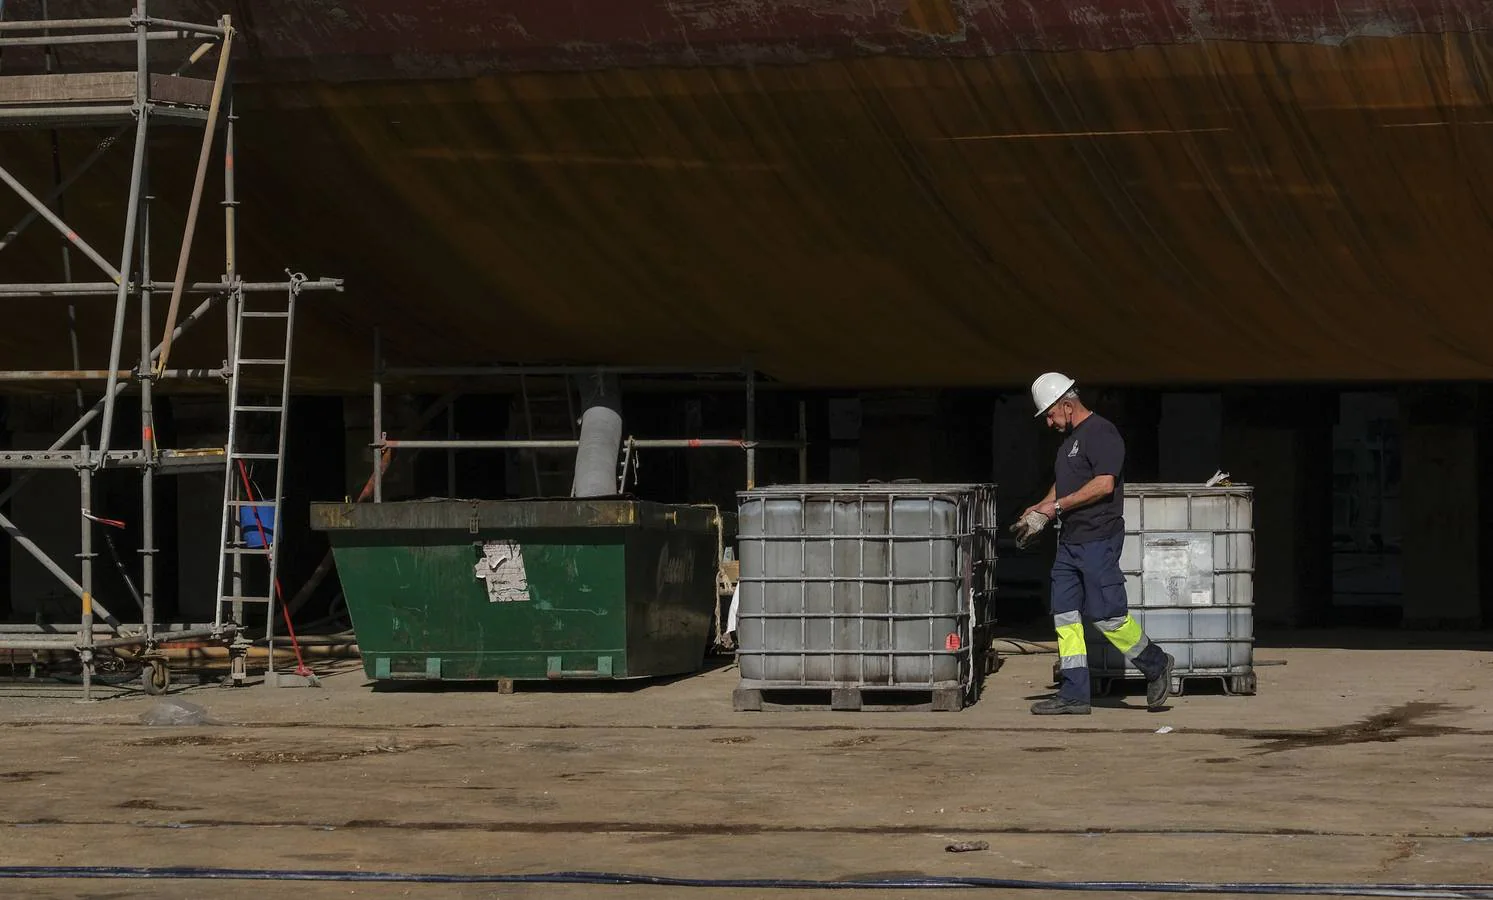 FOTOS: El portaeronaves ‘Juan Carlos I’ se somete a una profunda revisión en el astillero de Puerto Real